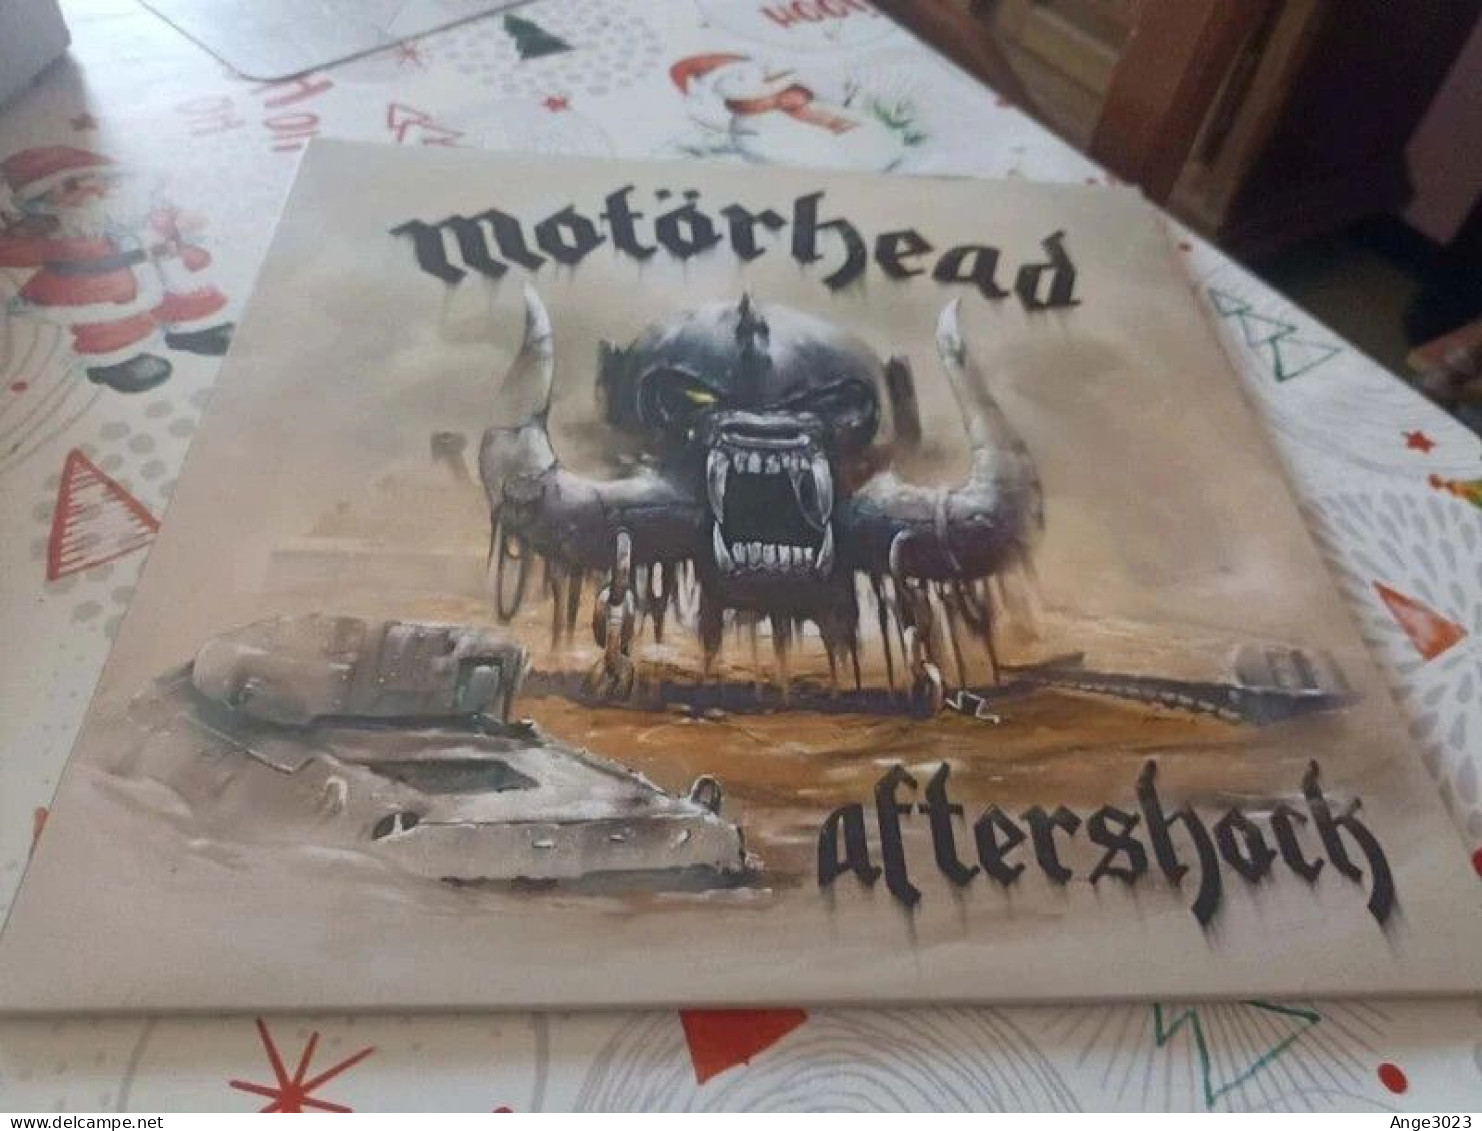 MOTORHEAD "Aftershock" - Hard Rock & Metal